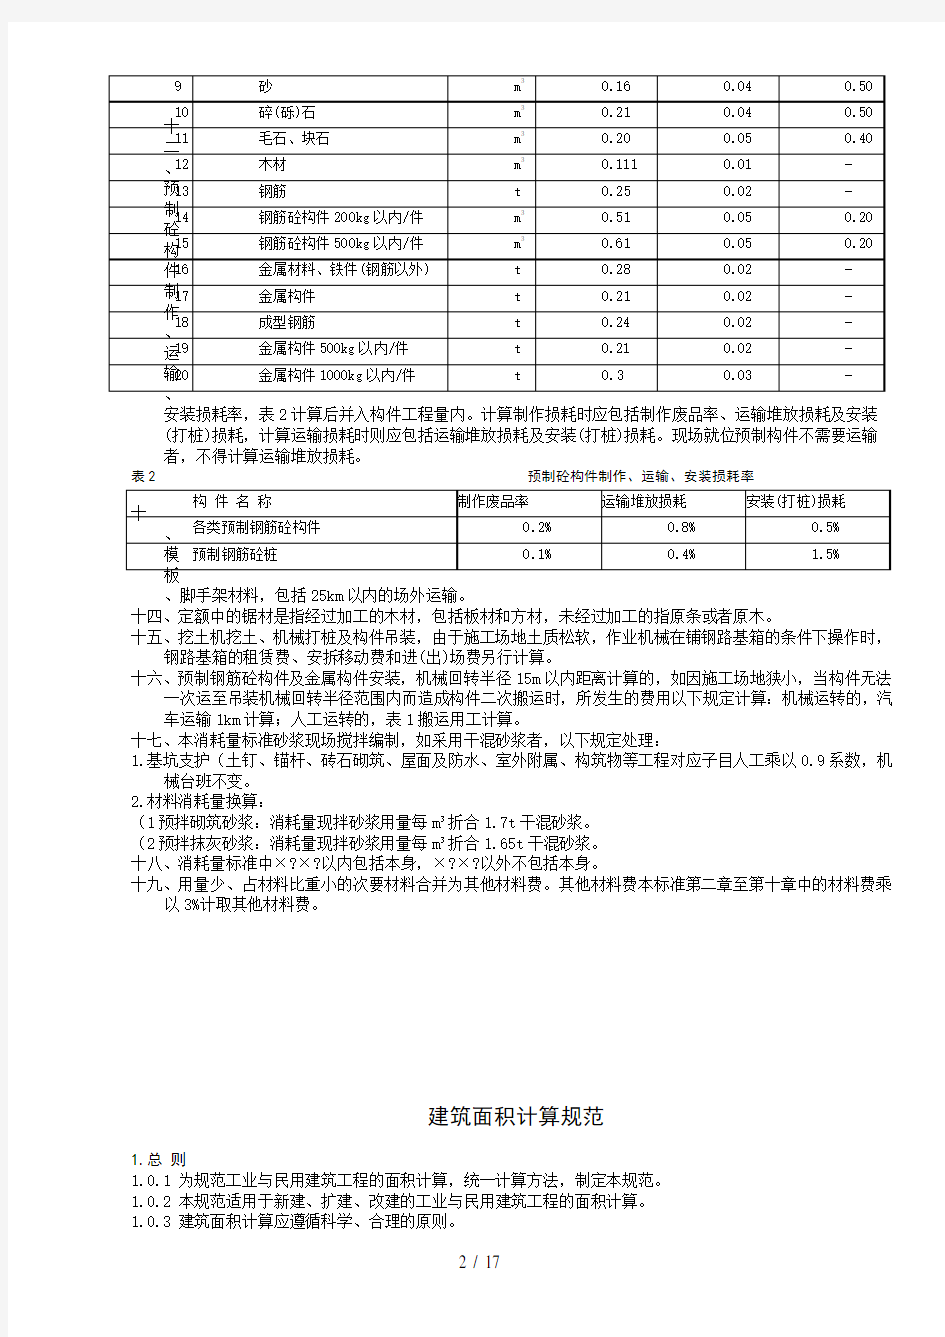 湖南省2014年建筑消耗量定额说明